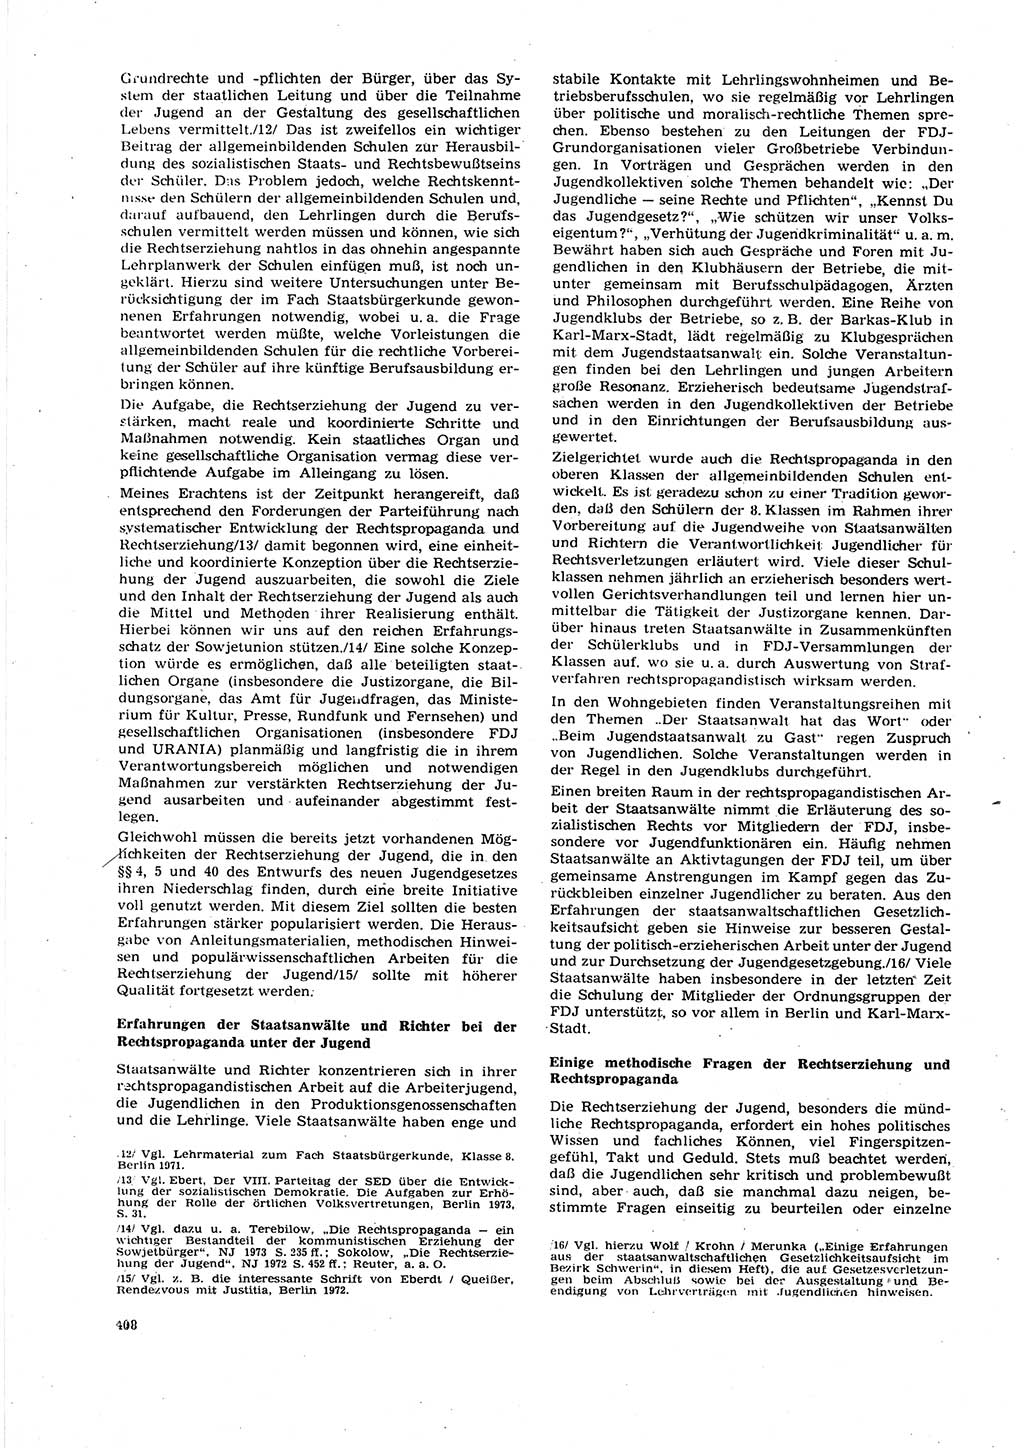 Neue Justiz (NJ), Zeitschrift für Recht und Rechtswissenschaft [Deutsche Demokratische Republik (DDR)], 27. Jahrgang 1973, Seite 408 (NJ DDR 1973, S. 408)